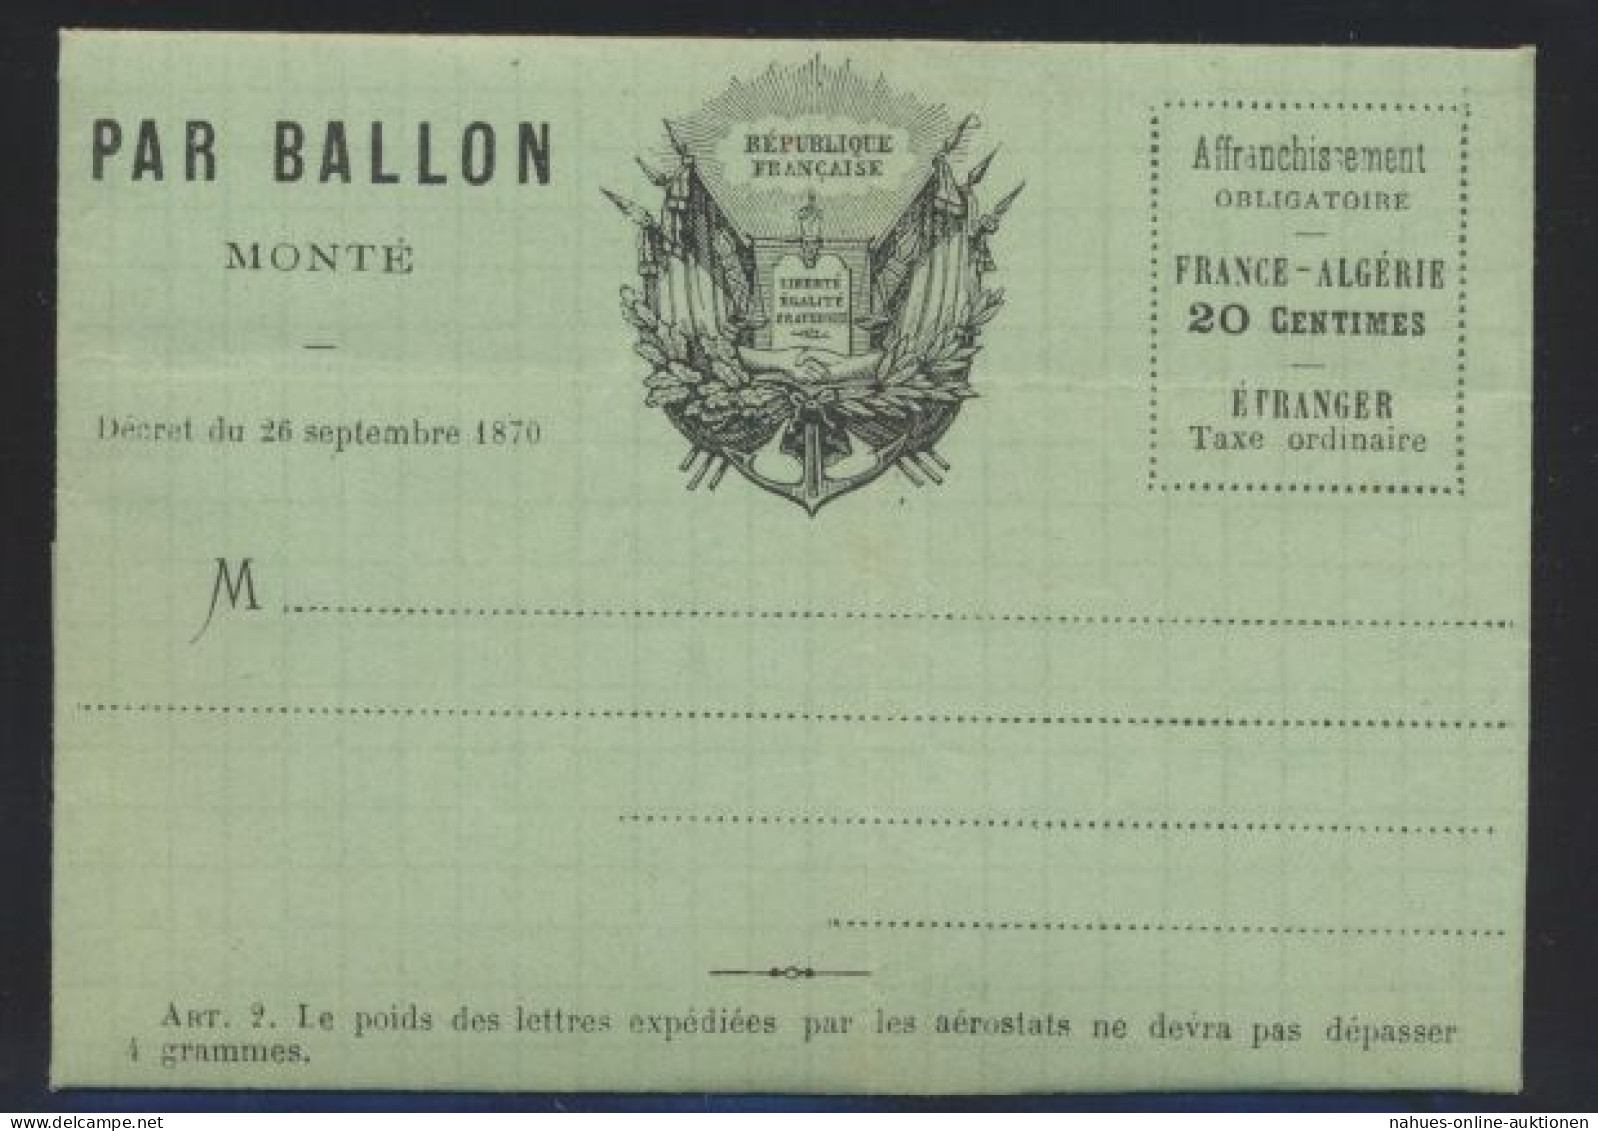 Flugpost Air Mail Ballonpost Ballon Monte Frankreich France 20 C. Faltbrief Von - Briefe U. Dokumente